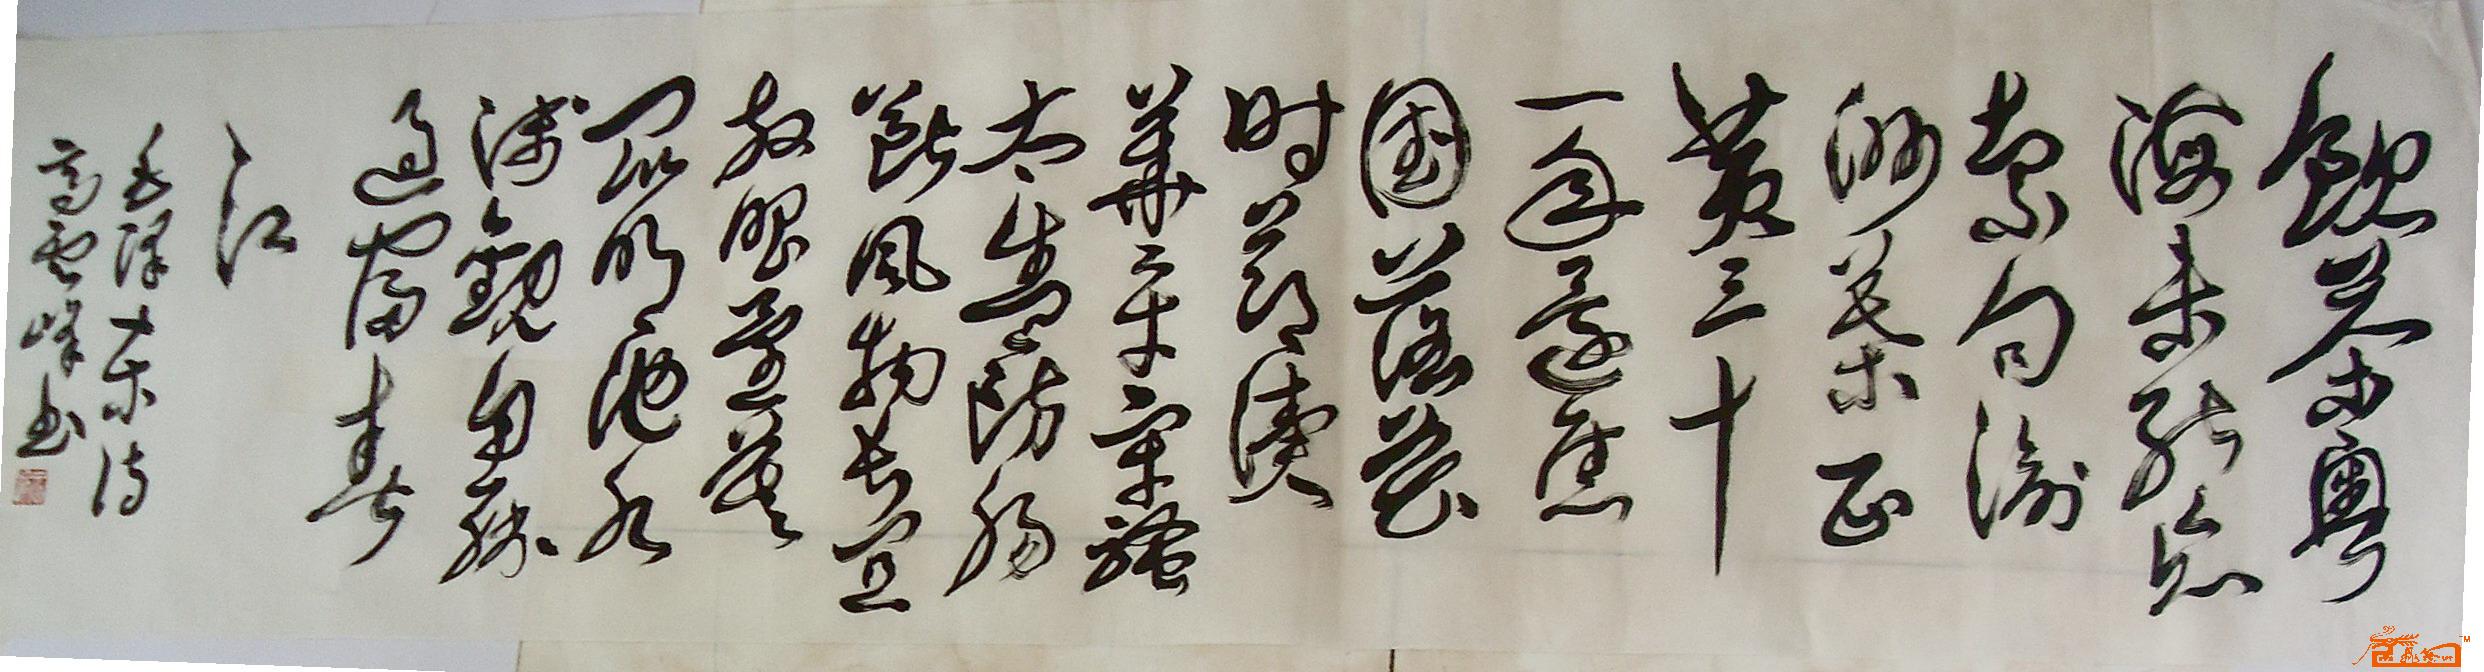 草书横幅毛泽东和柳亚子先生诗